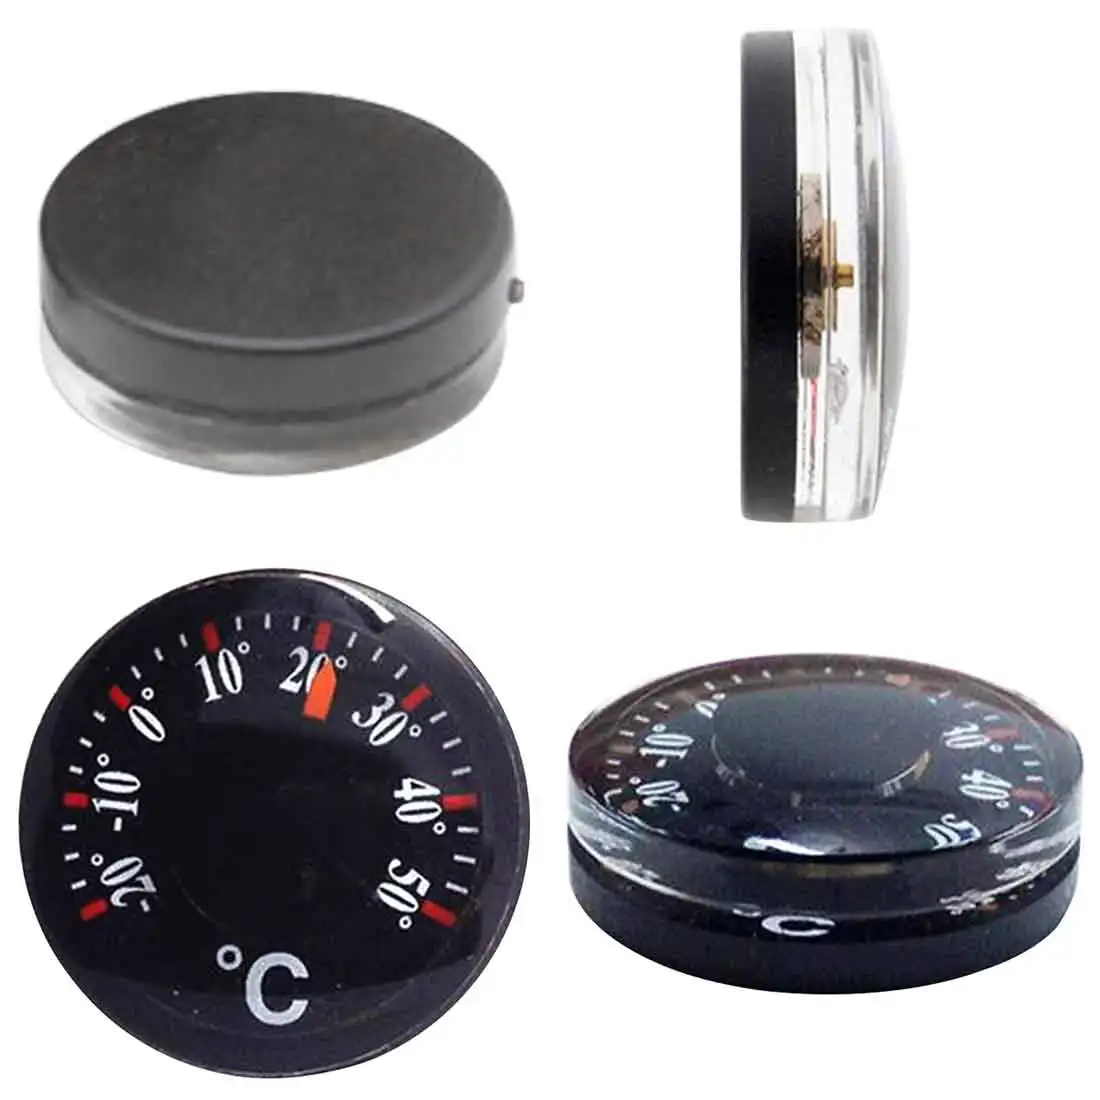 Мини диаметр 20 мм Открытый водонепроницаемый пластиковый круглый Автомобильный термометр указатель градусов термометр Цельсий